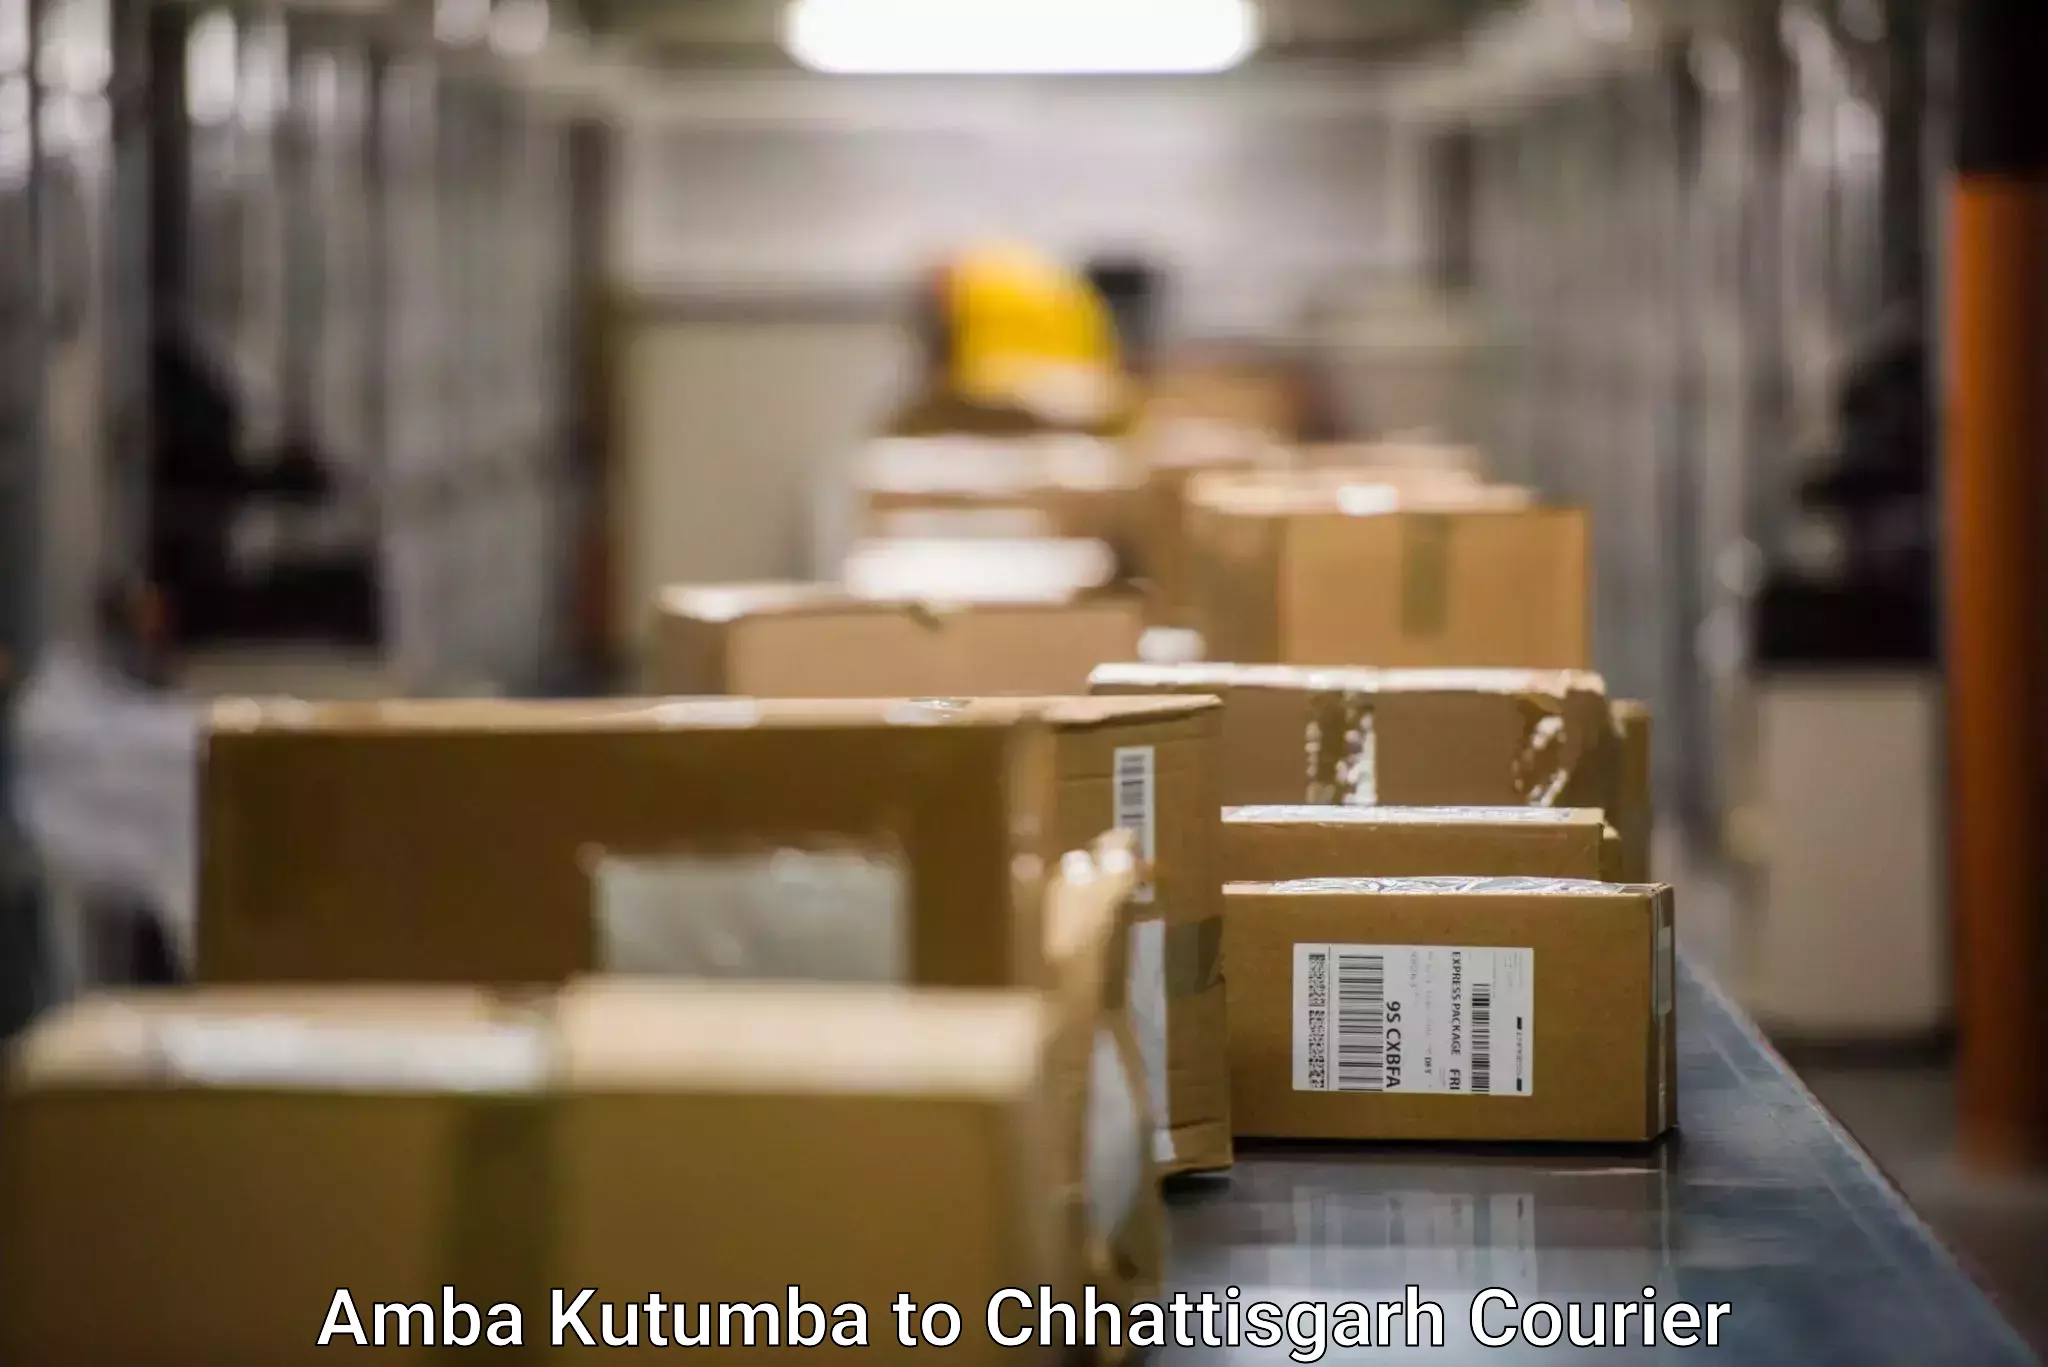 Express courier capabilities Amba Kutumba to Dhamtari